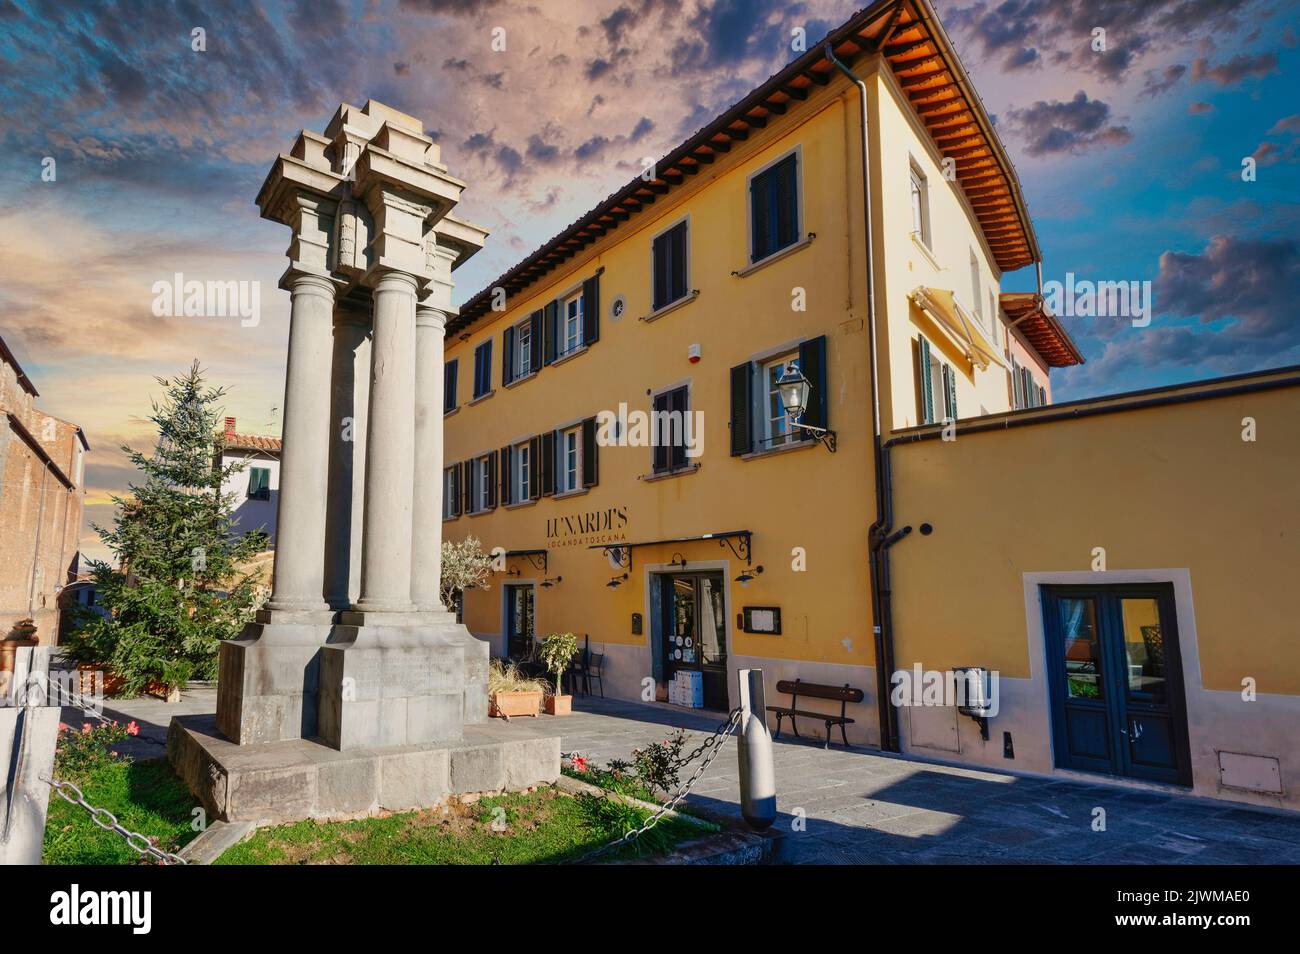 El monumento conmemorativo de la guerra en la plaza de la Piazza Carrara en el centro de Montecarlo, Lucca, Italia, bajo un hermoso cielo Foto de stock